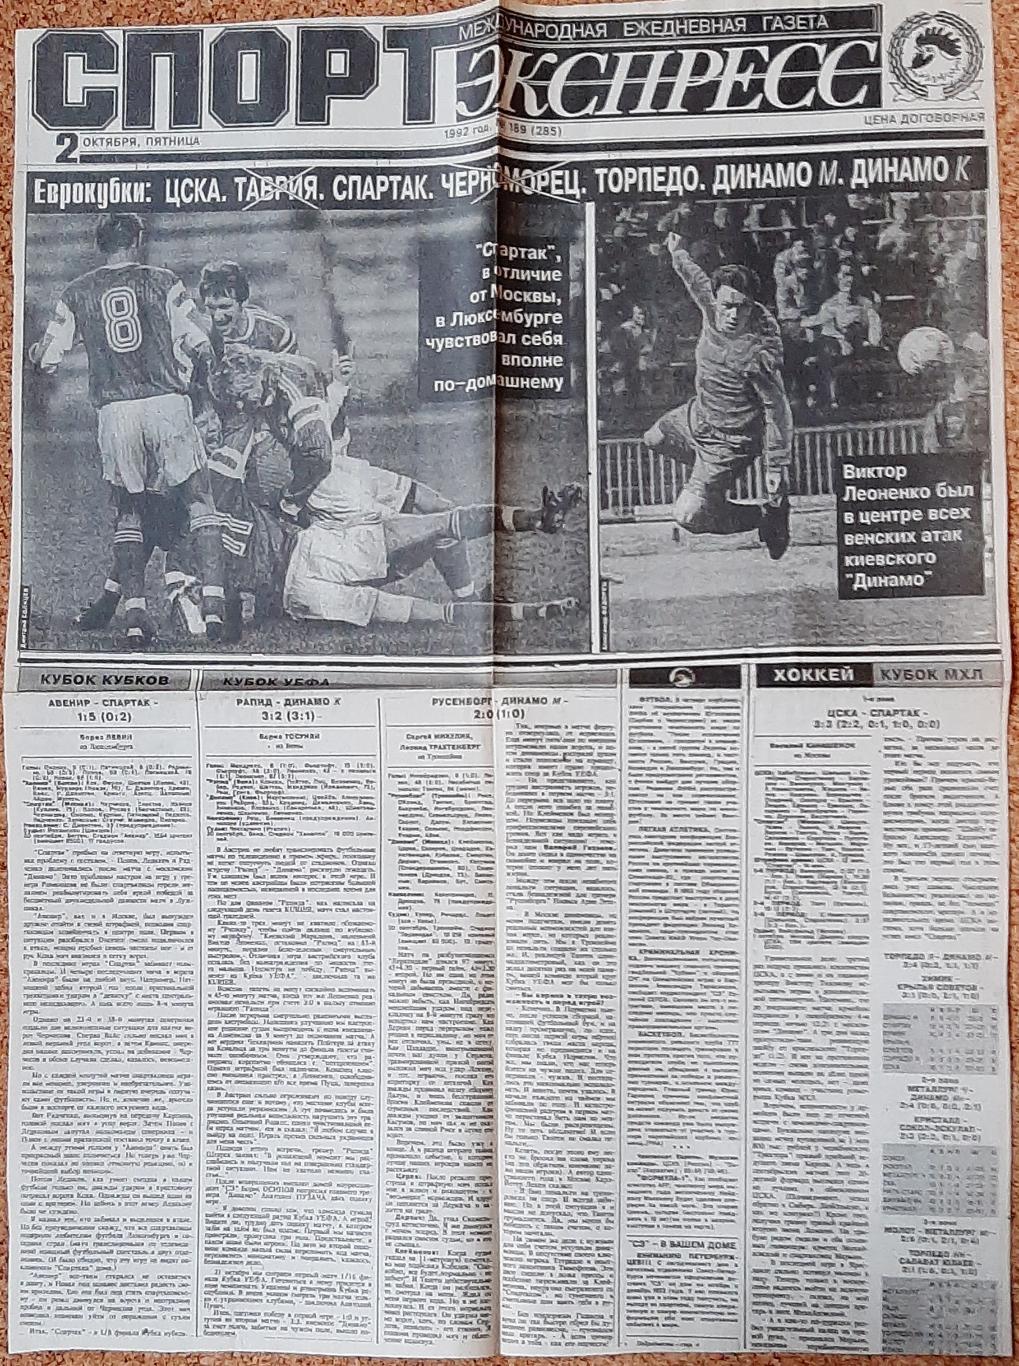 Вирізка з газети Спорт експрес #189 (2 жовтня 1992)